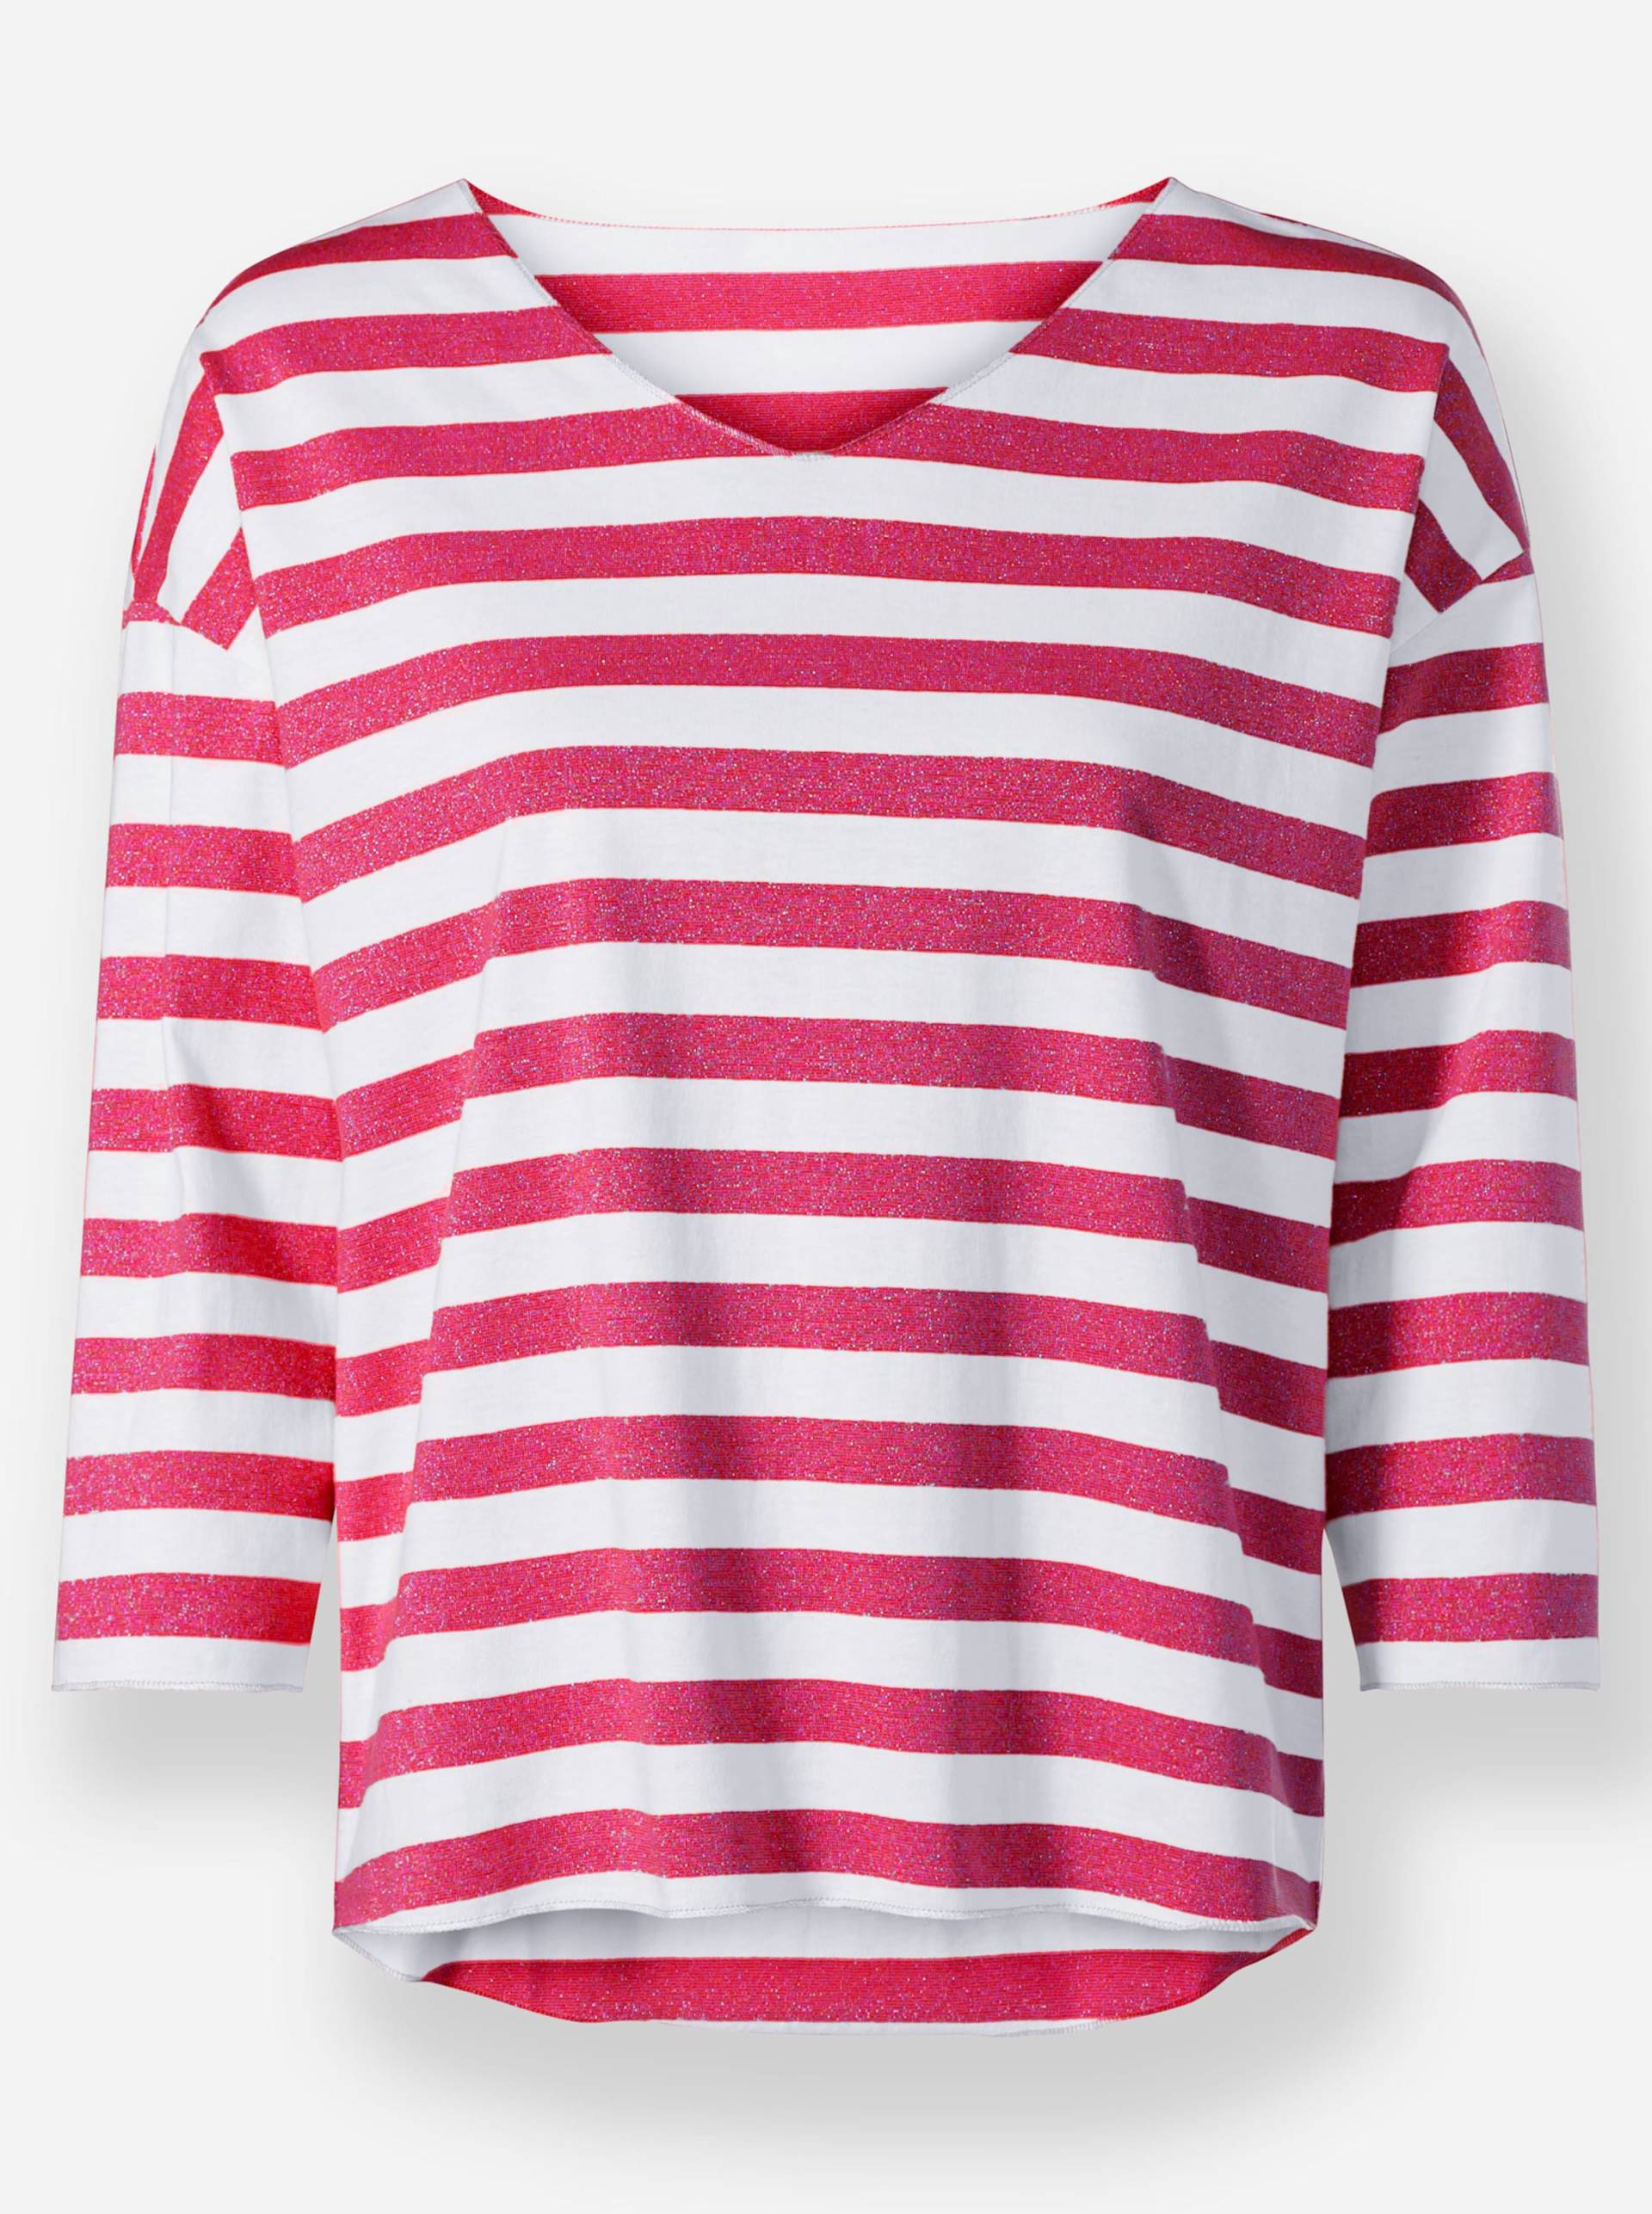 T-Shirt in pink-weiss-gestreift von heine